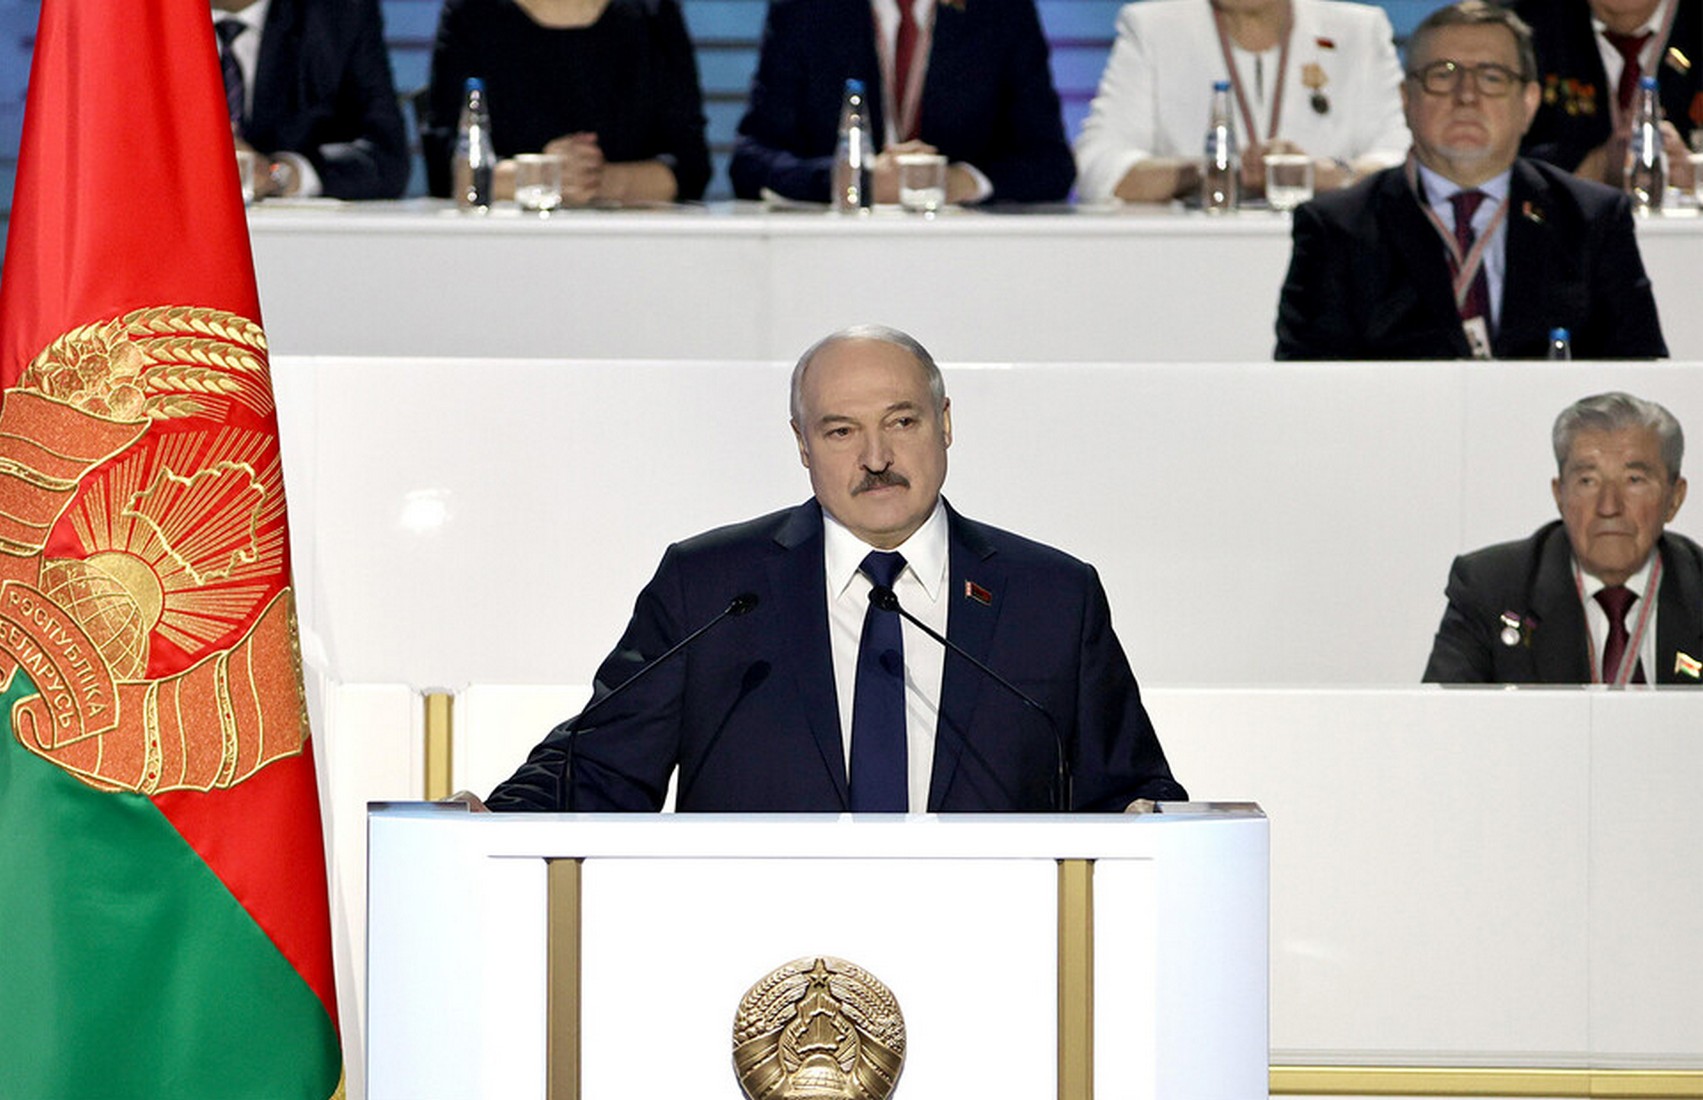 Лукашенко пообещал, что не будет показывать себя в интернете «раздетым и пьяным»